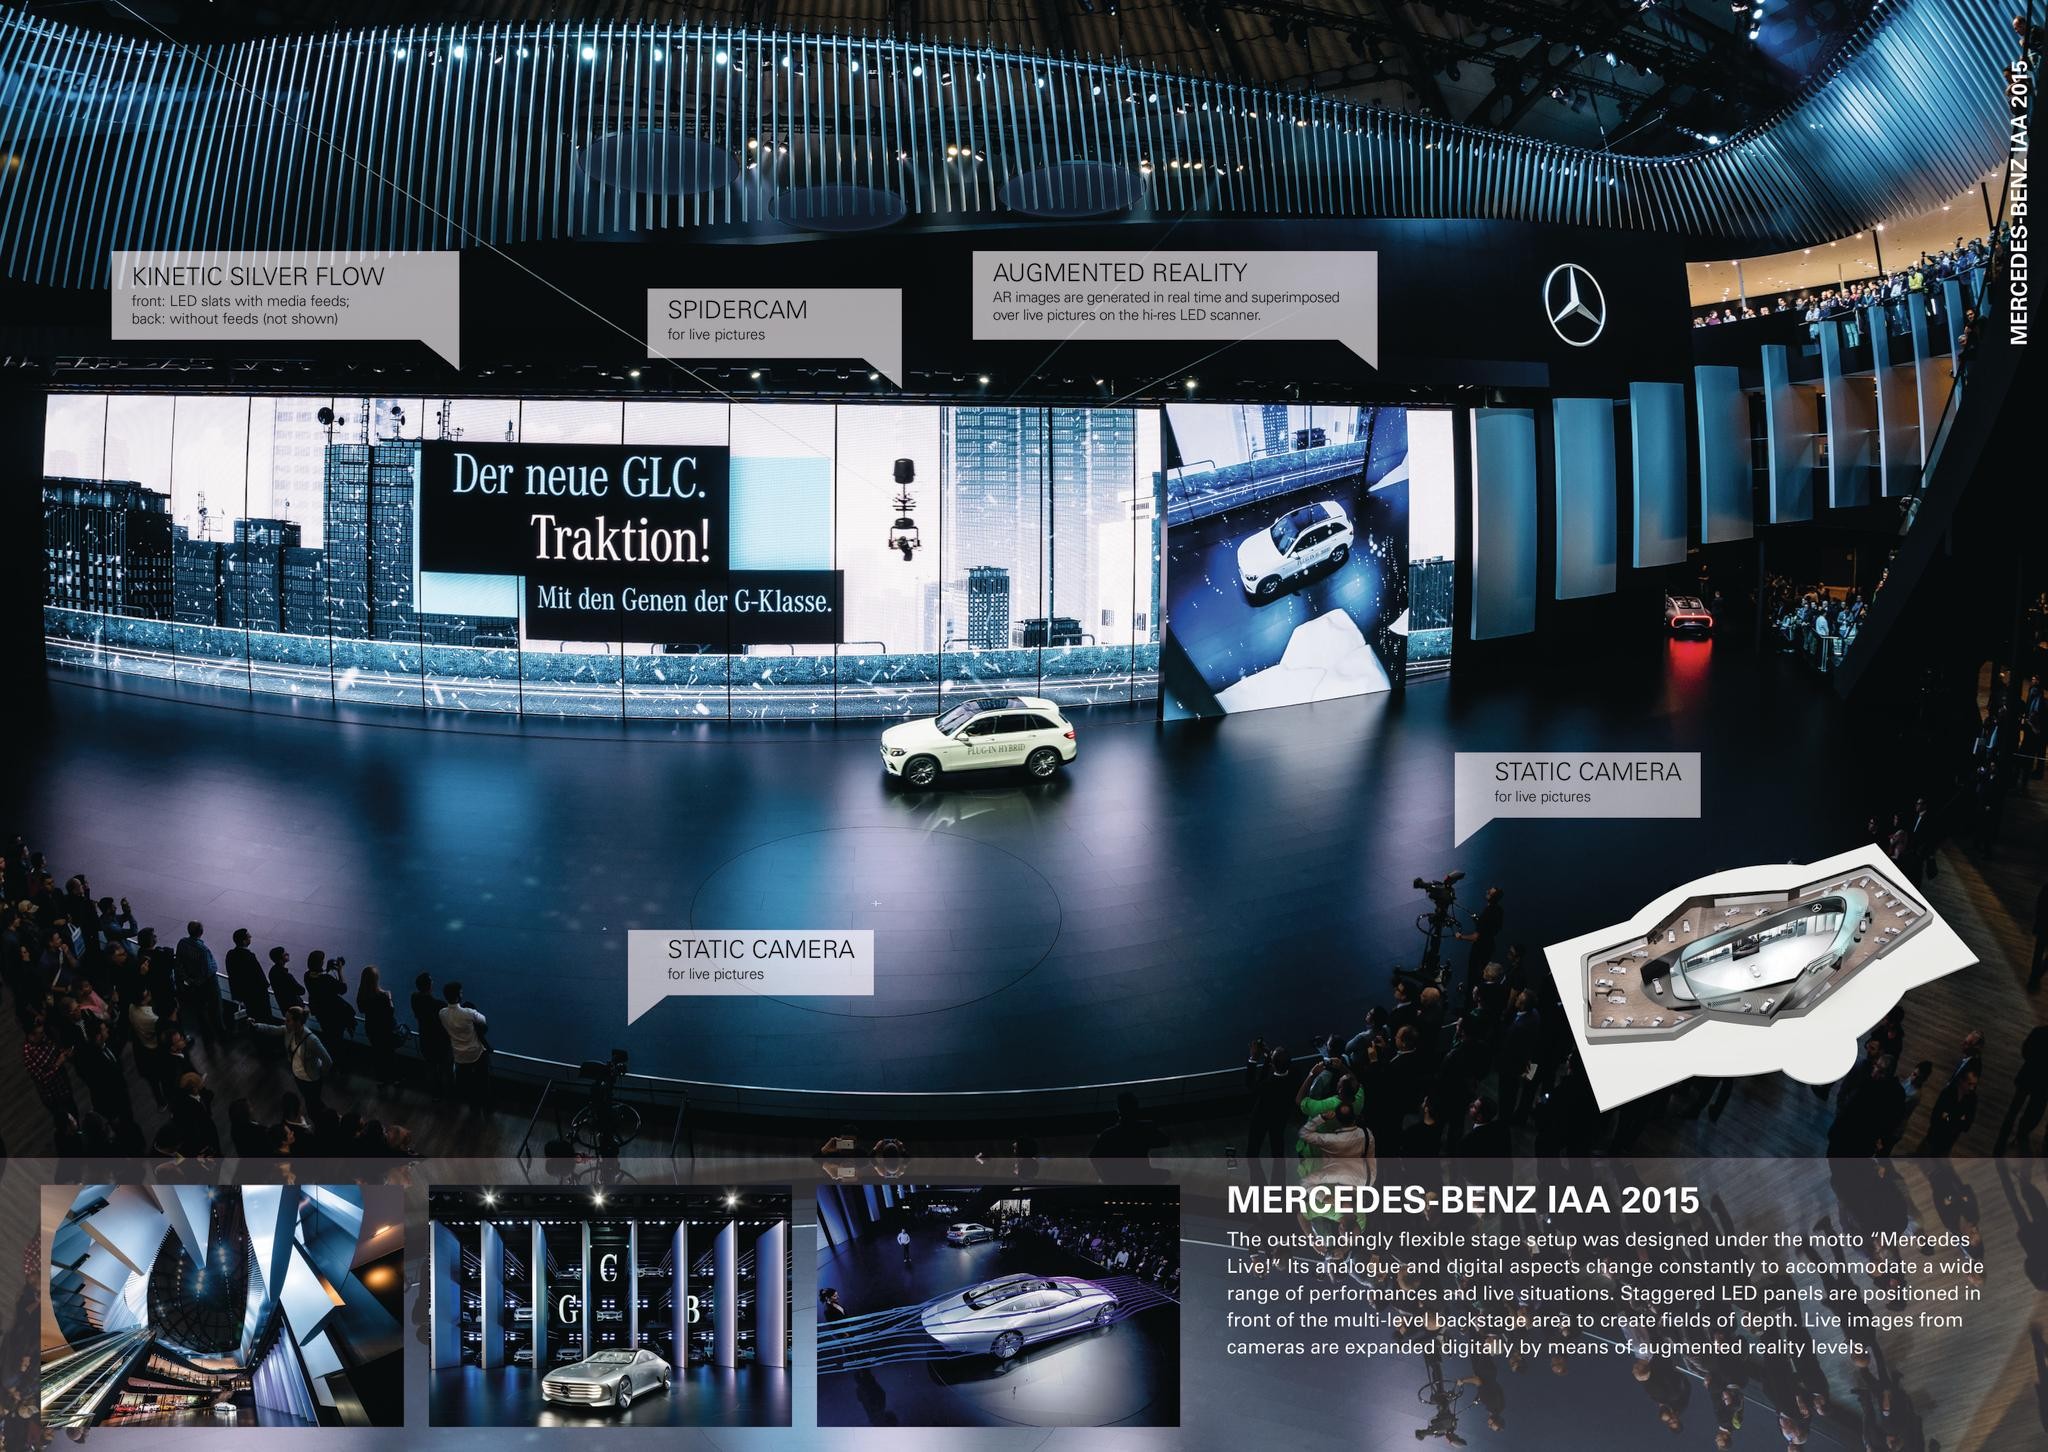 Mercedes-Benz at the IAA 2015